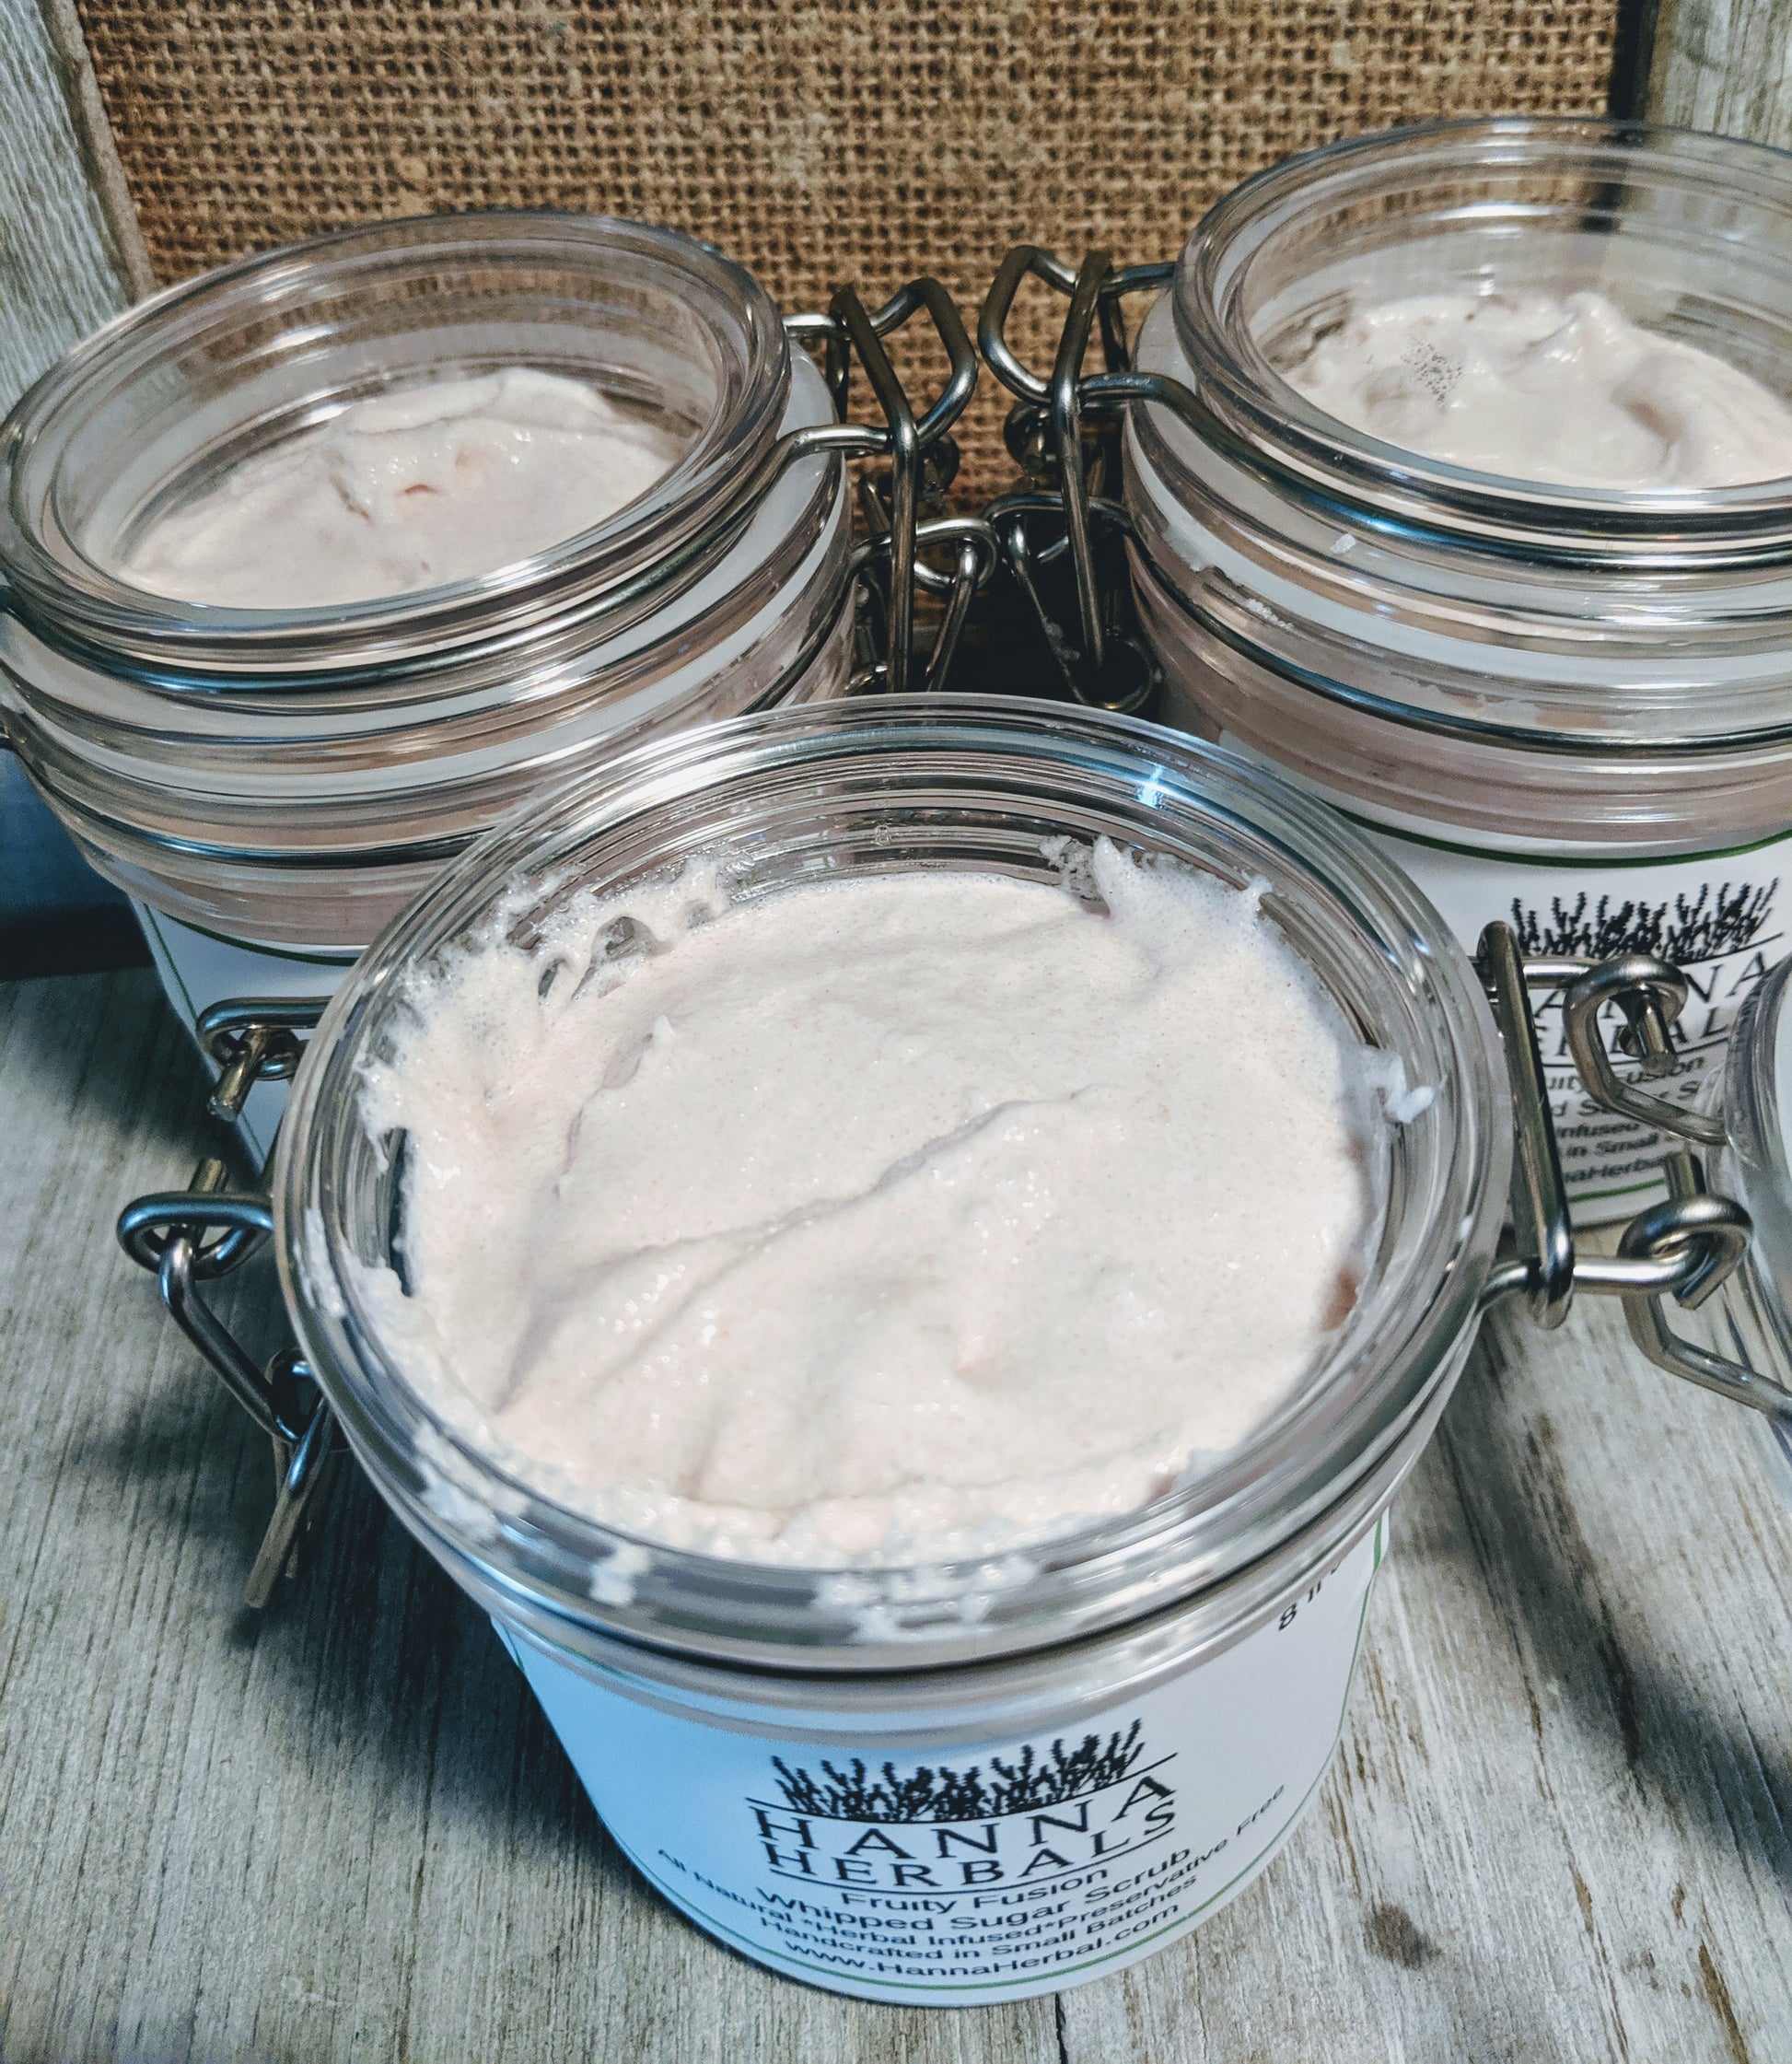 Shaving Cream - Hanna Herbals